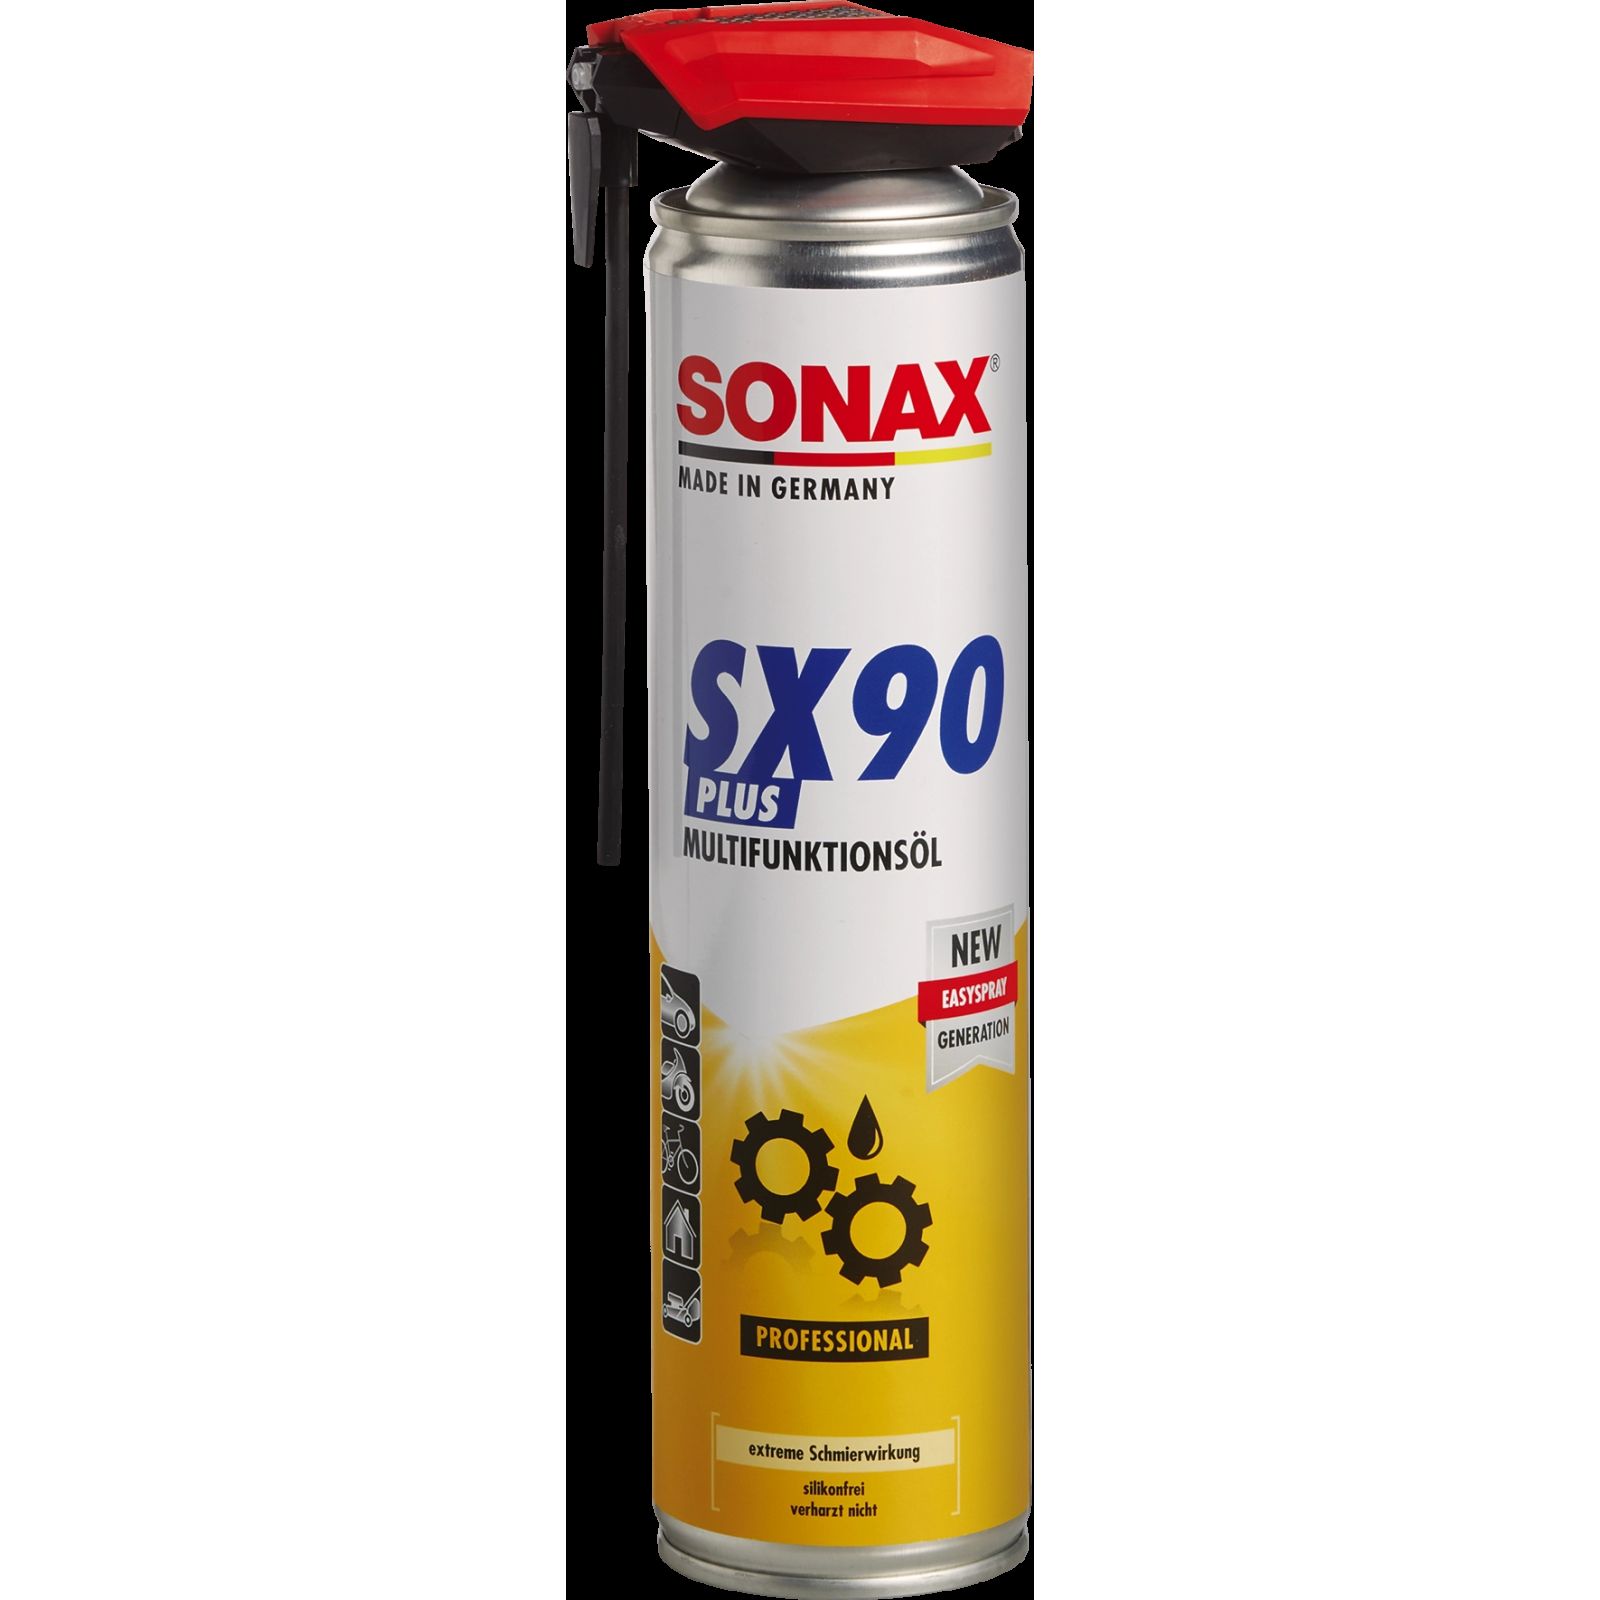 Sonax Multifunktionsspray SX90 Plus 400ml